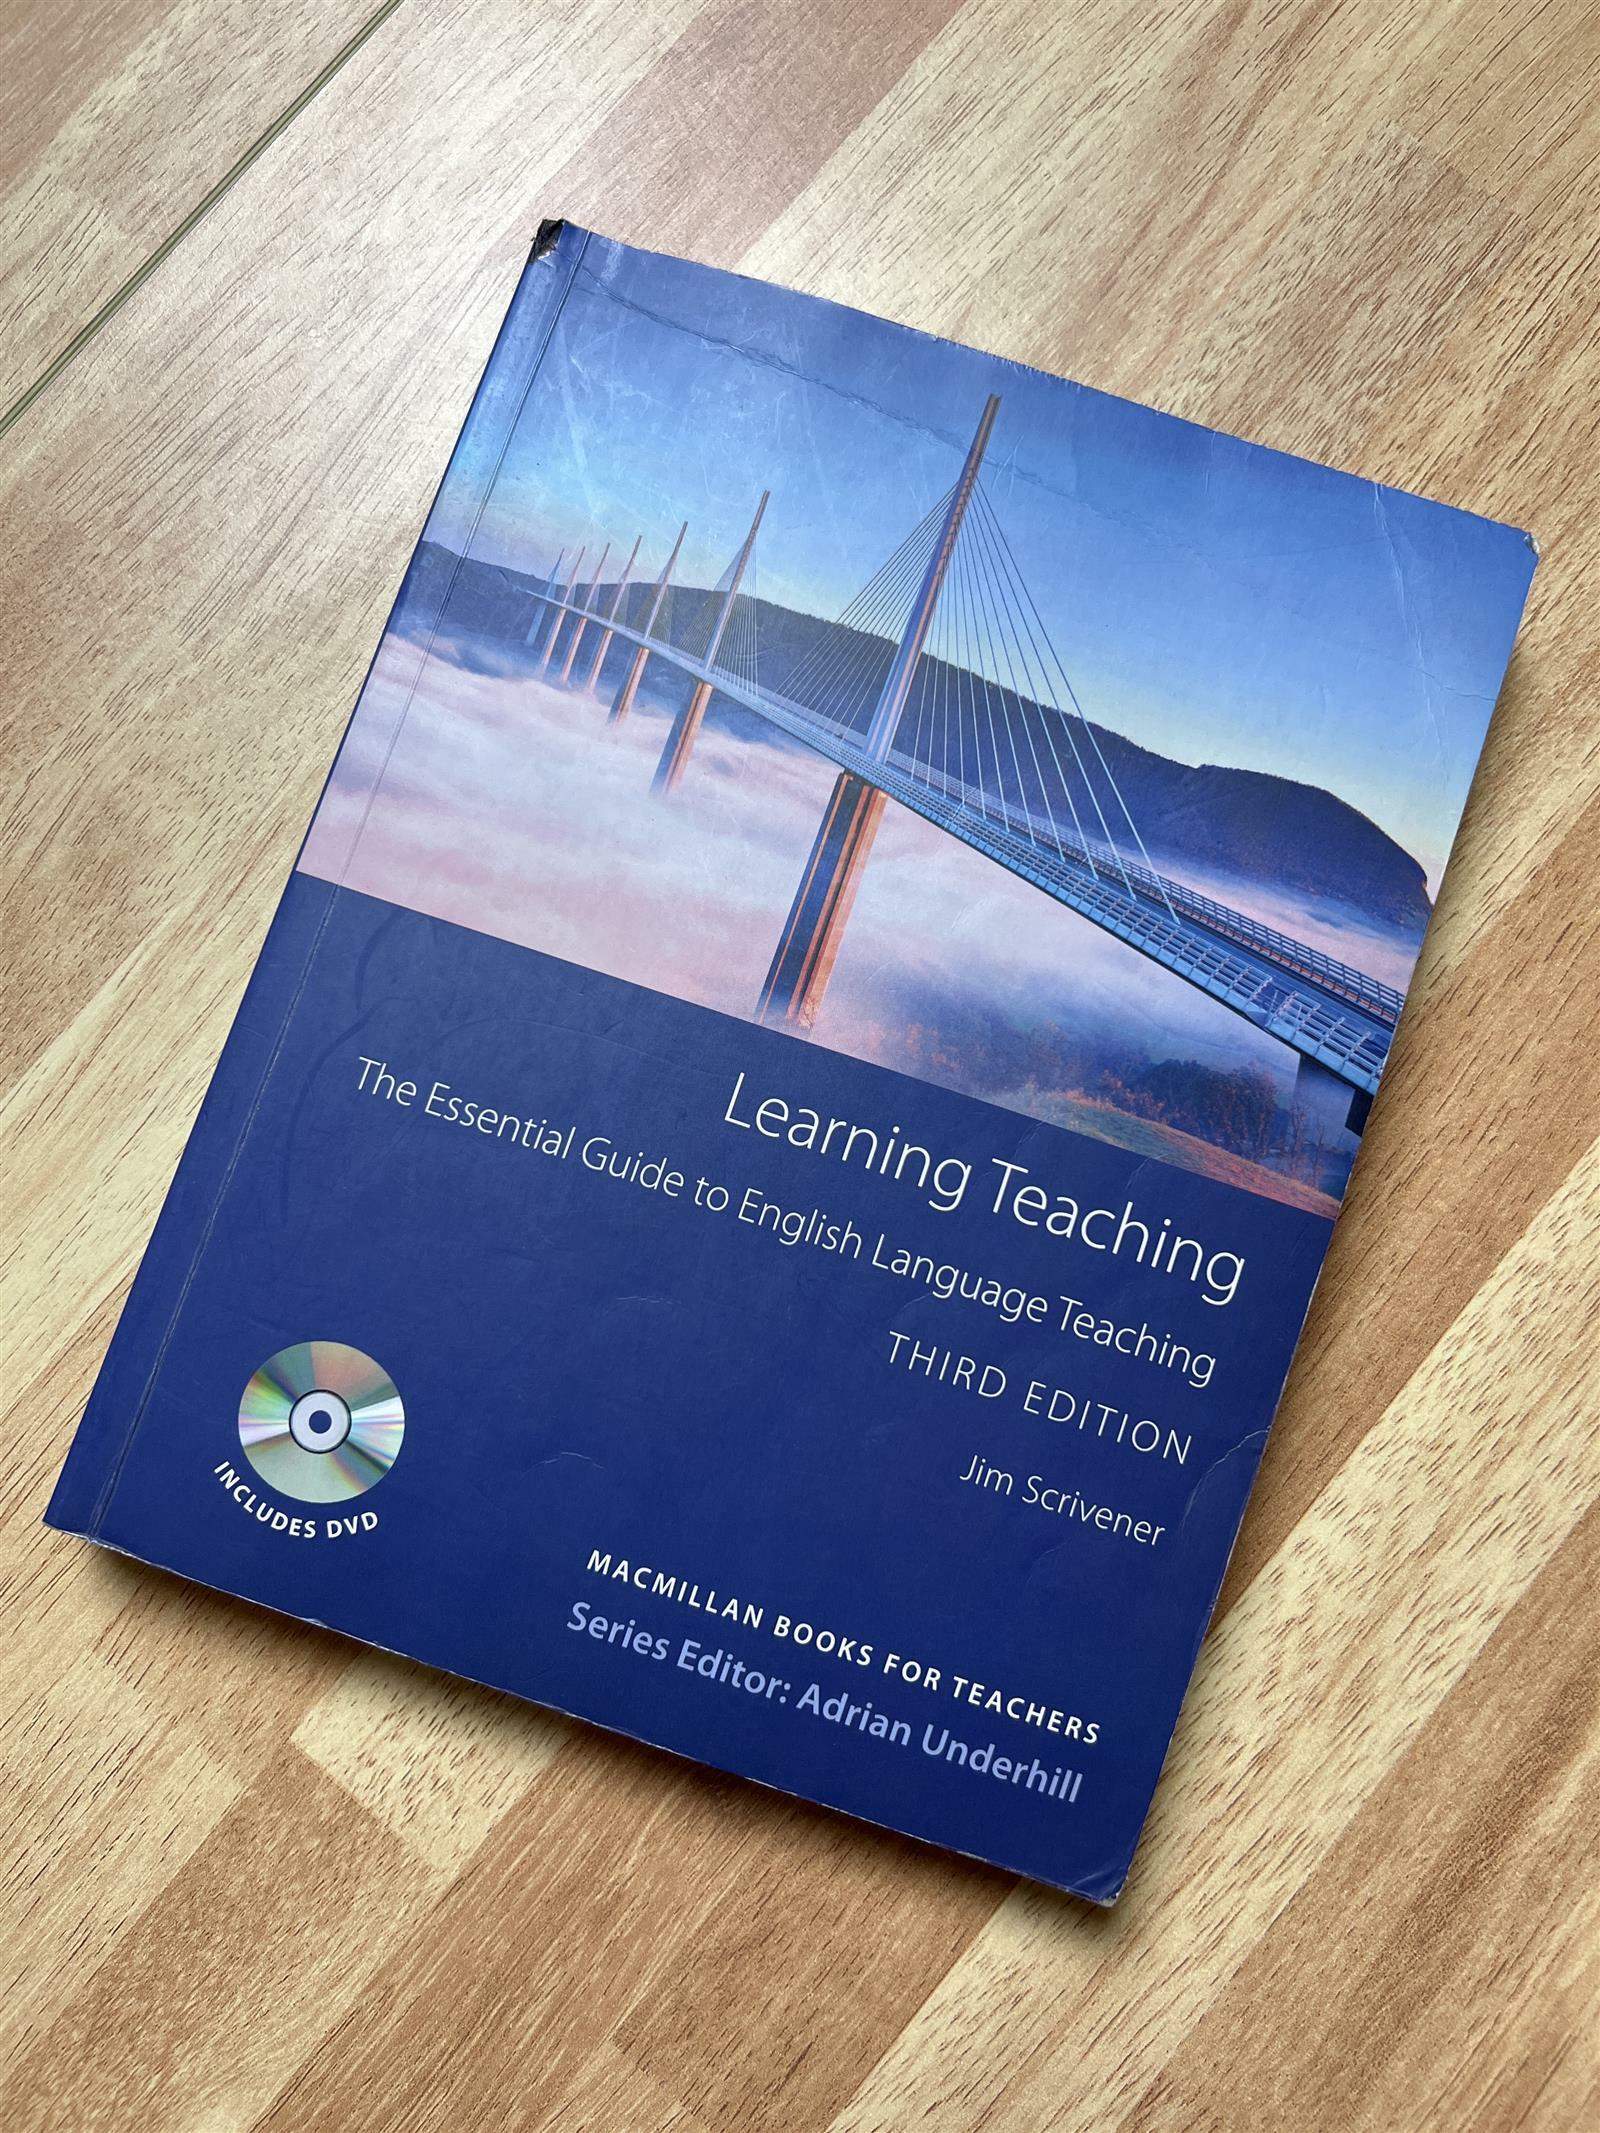 [중고] Macmillan Books for Teachers 09 : Learning Teaching Student‘s Book Pack (Paperback + DVD video, 3rd Edition)